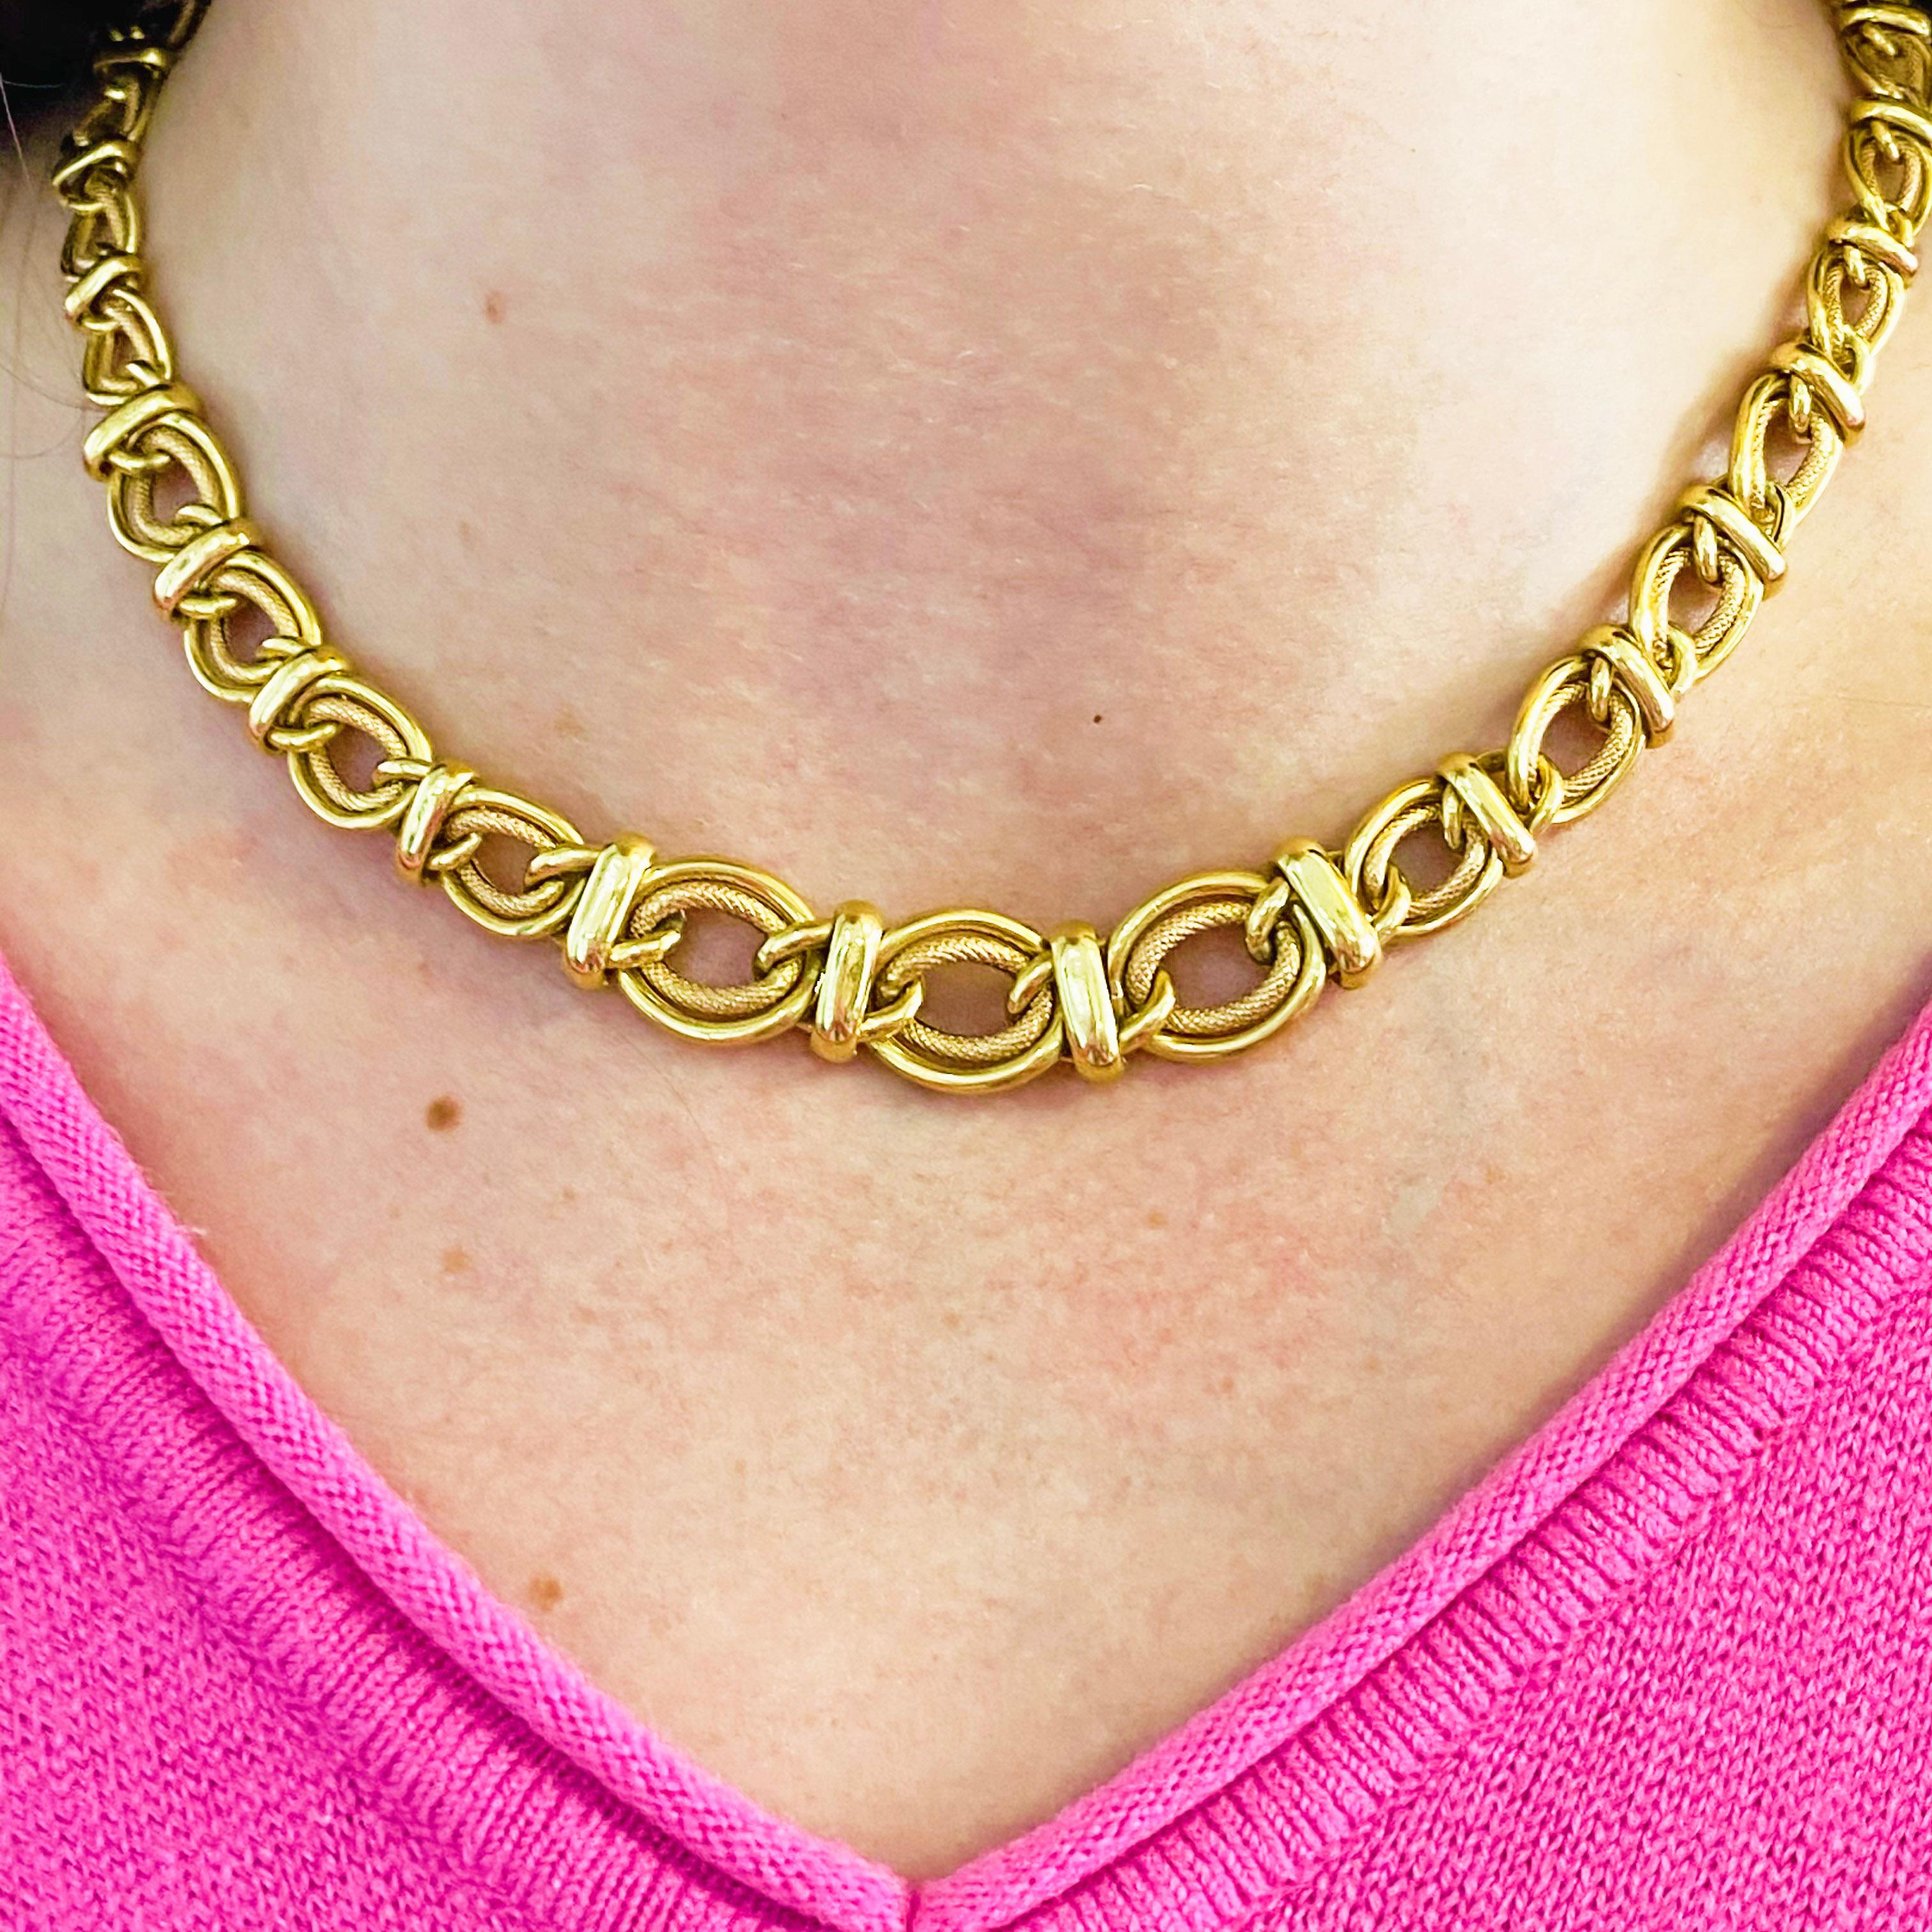 Dieses brillante 14-karätige Gelbgold-Kettenhalsband ist extrem vielseitig! Er bietet einen klassischen Look, der sowohl zu Freizeitkleidung als auch zu formeller Kleidung passt. Die Halskette ist einzigartig, da sie an jedem Glied einen